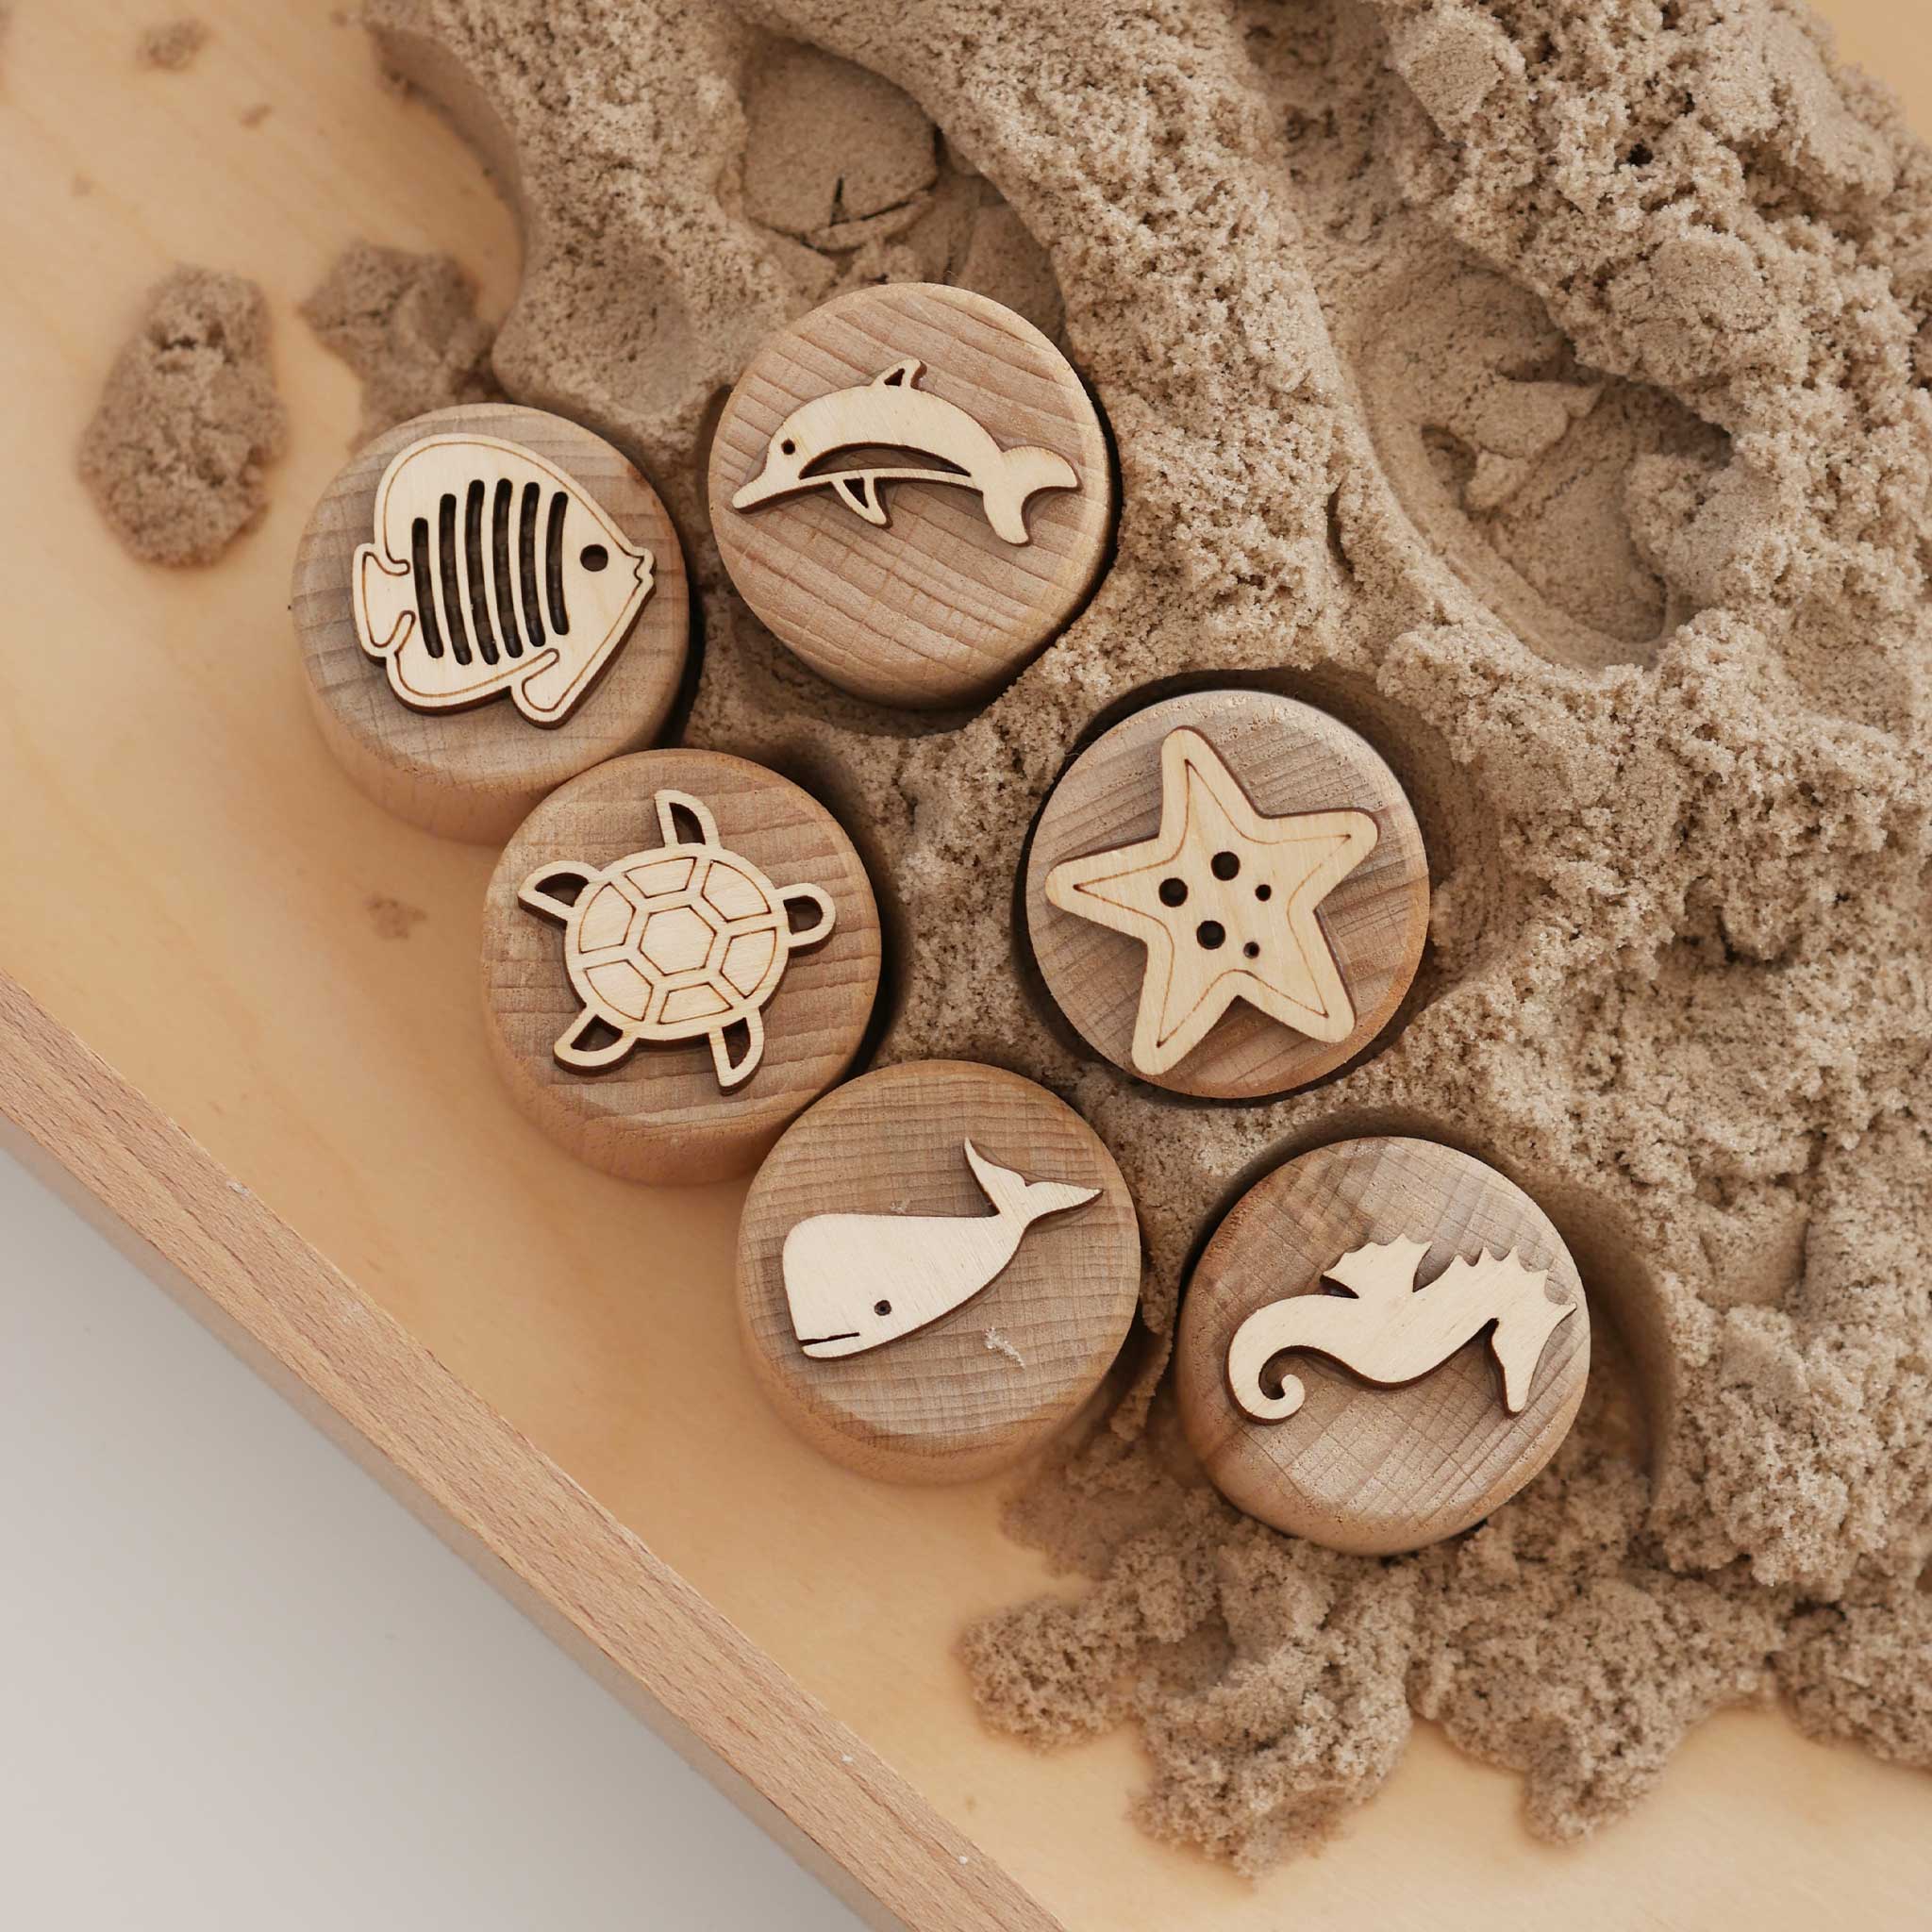 Sandstempel aus Holz mit Meerestieren, handgefertigt